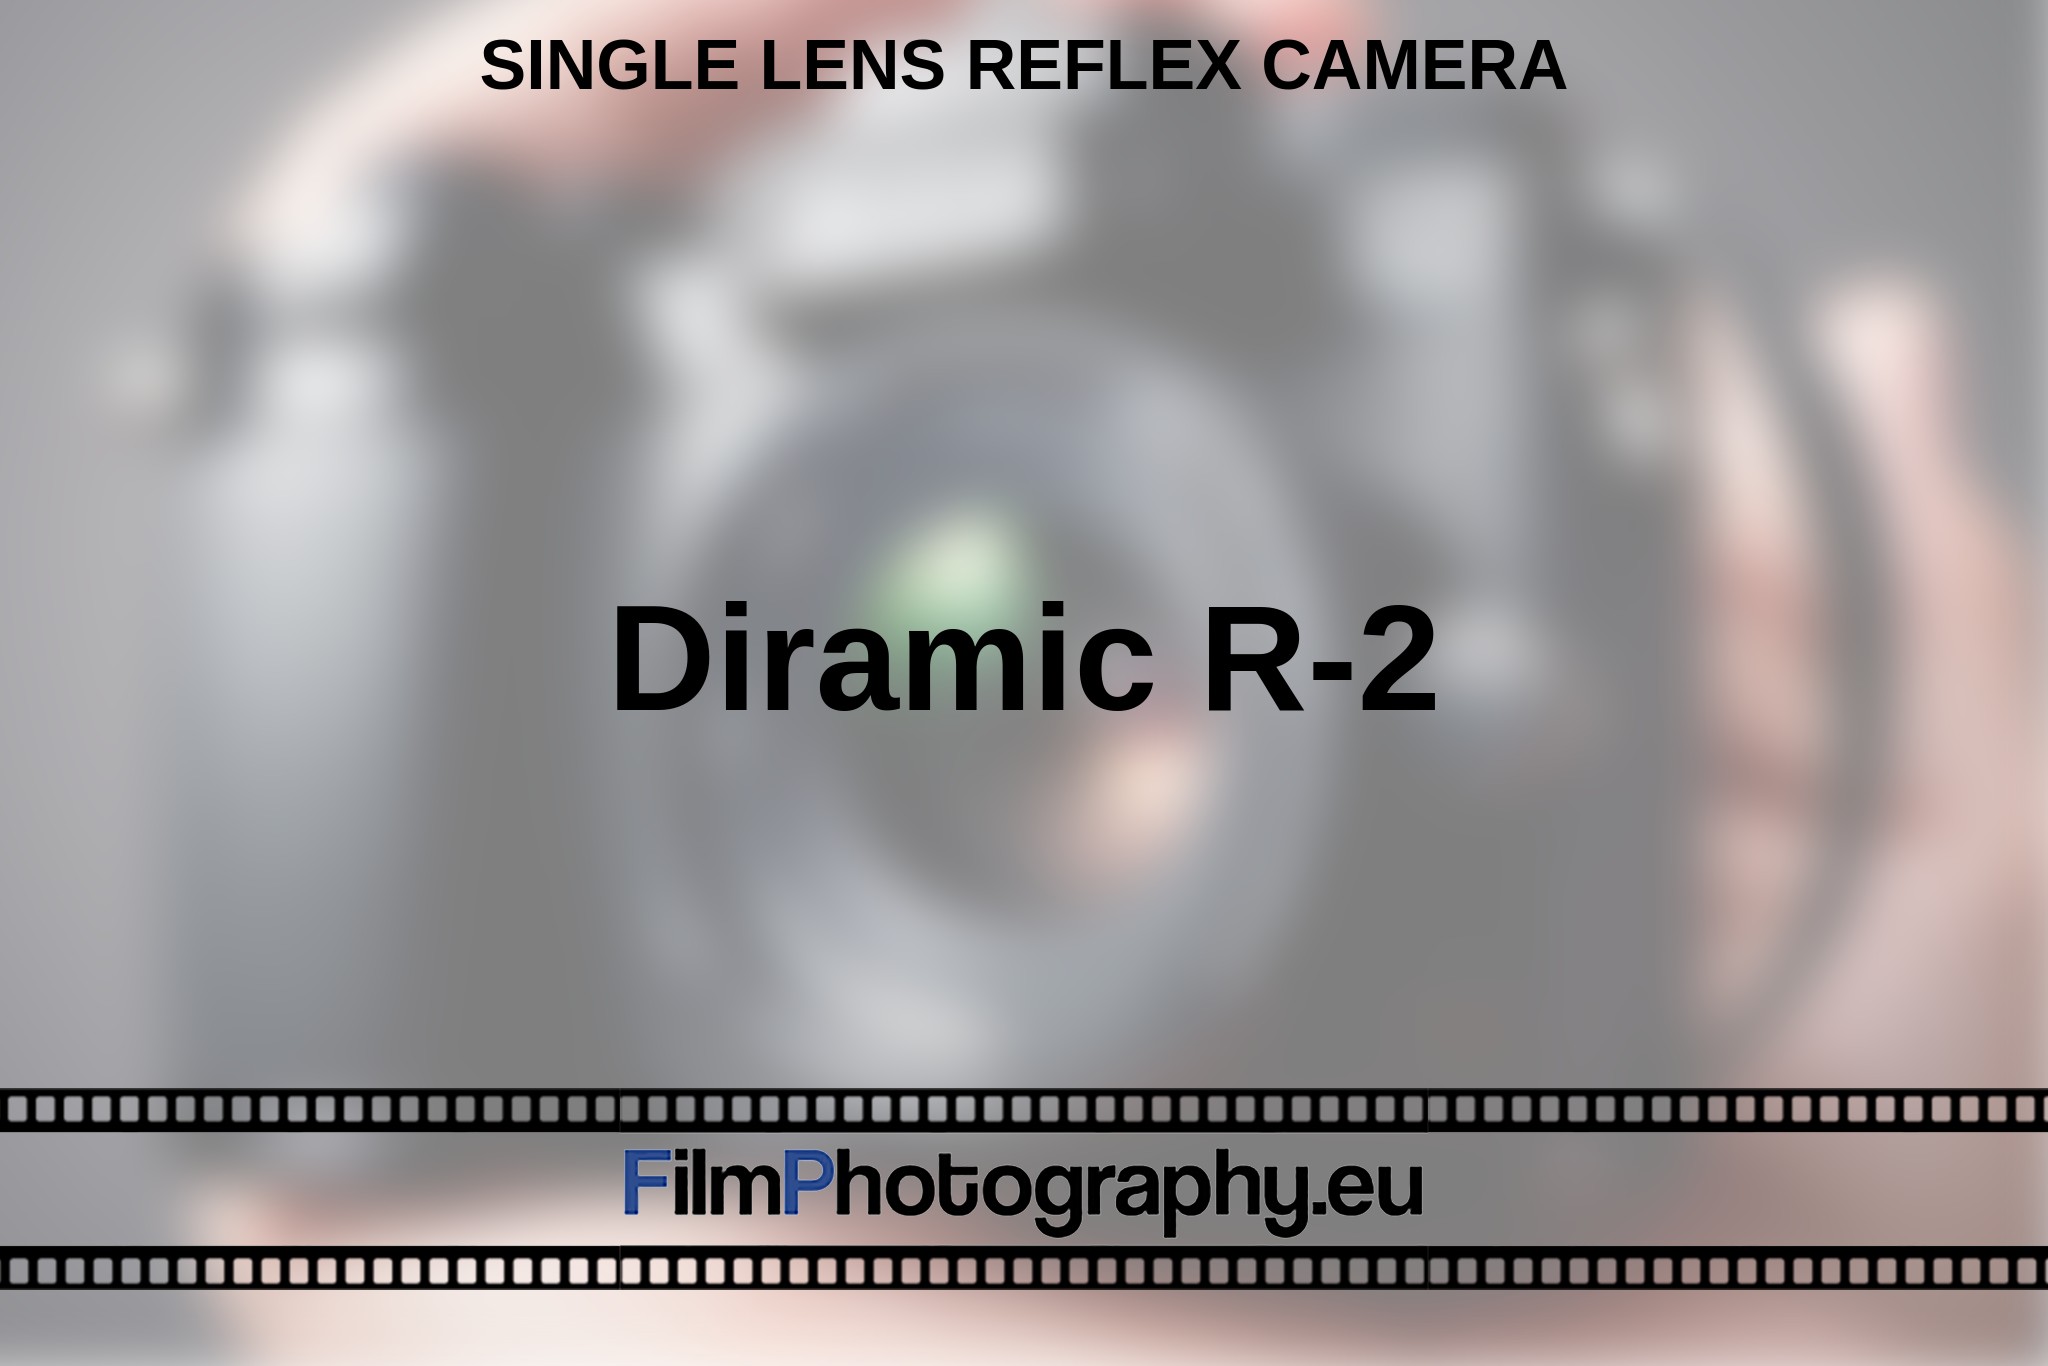 diramic-r-2-single-lens-reflex-camera-en-bnv.jpg